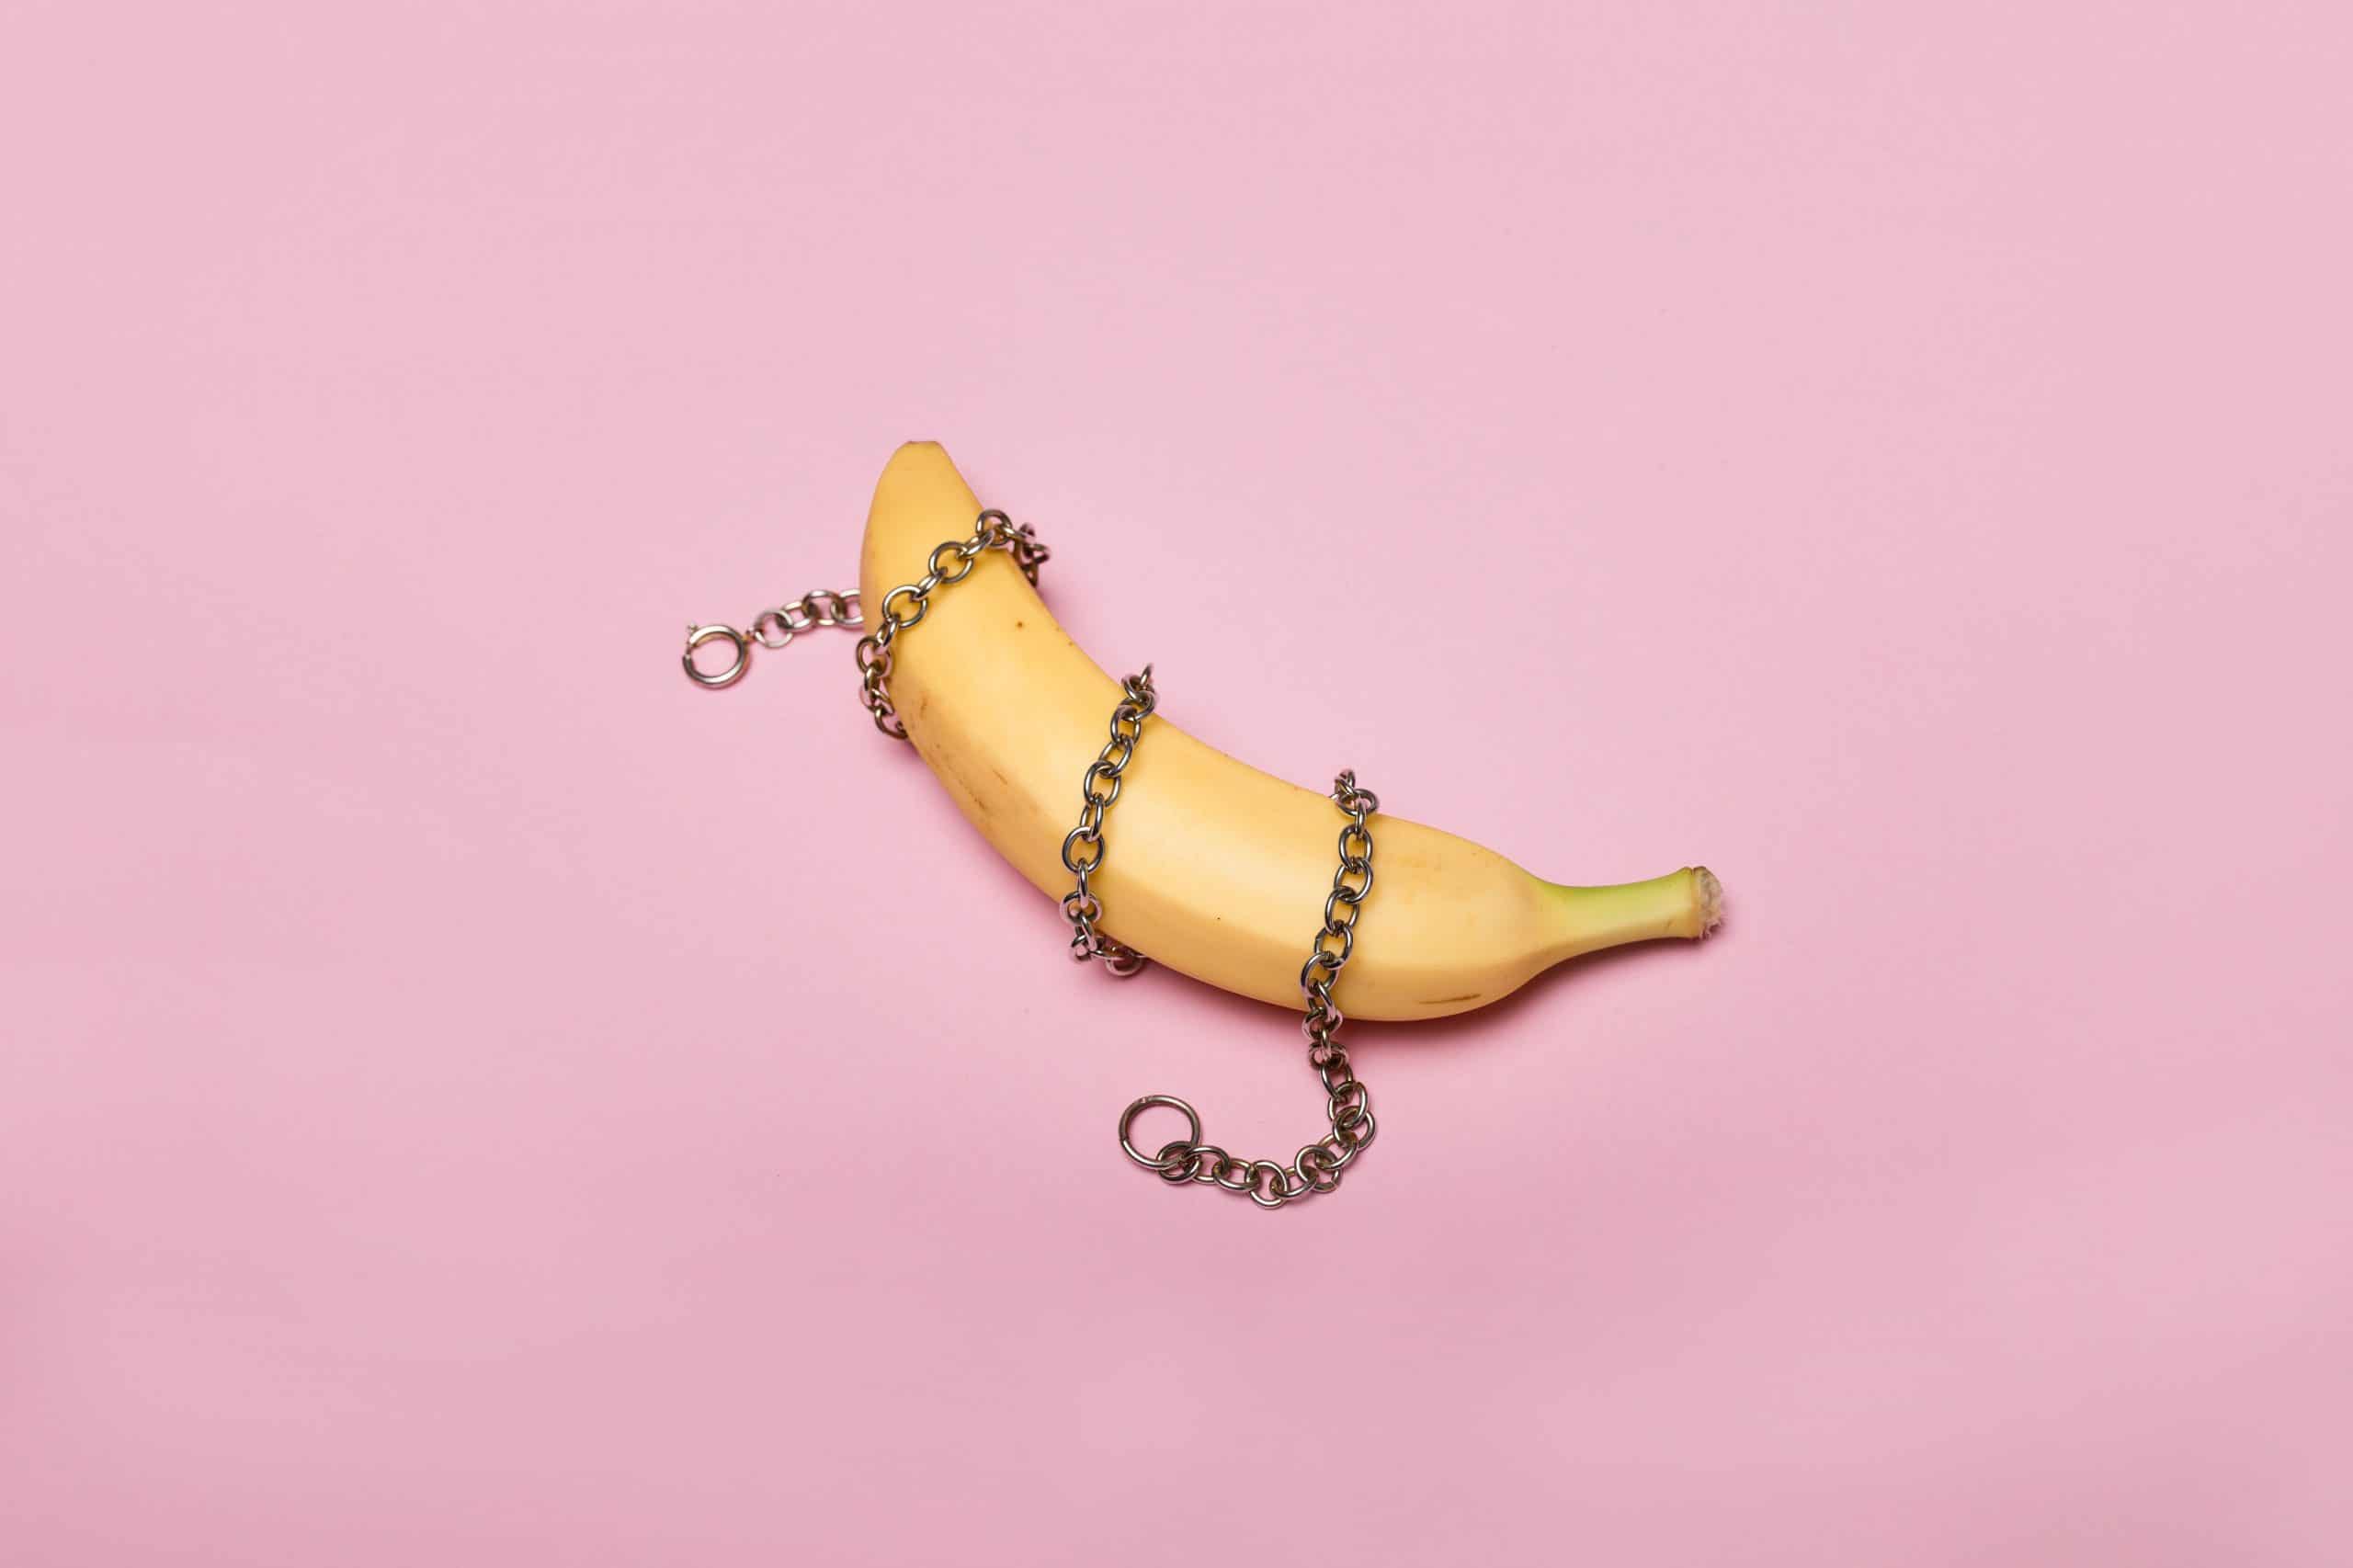 Banana wrap in a chain